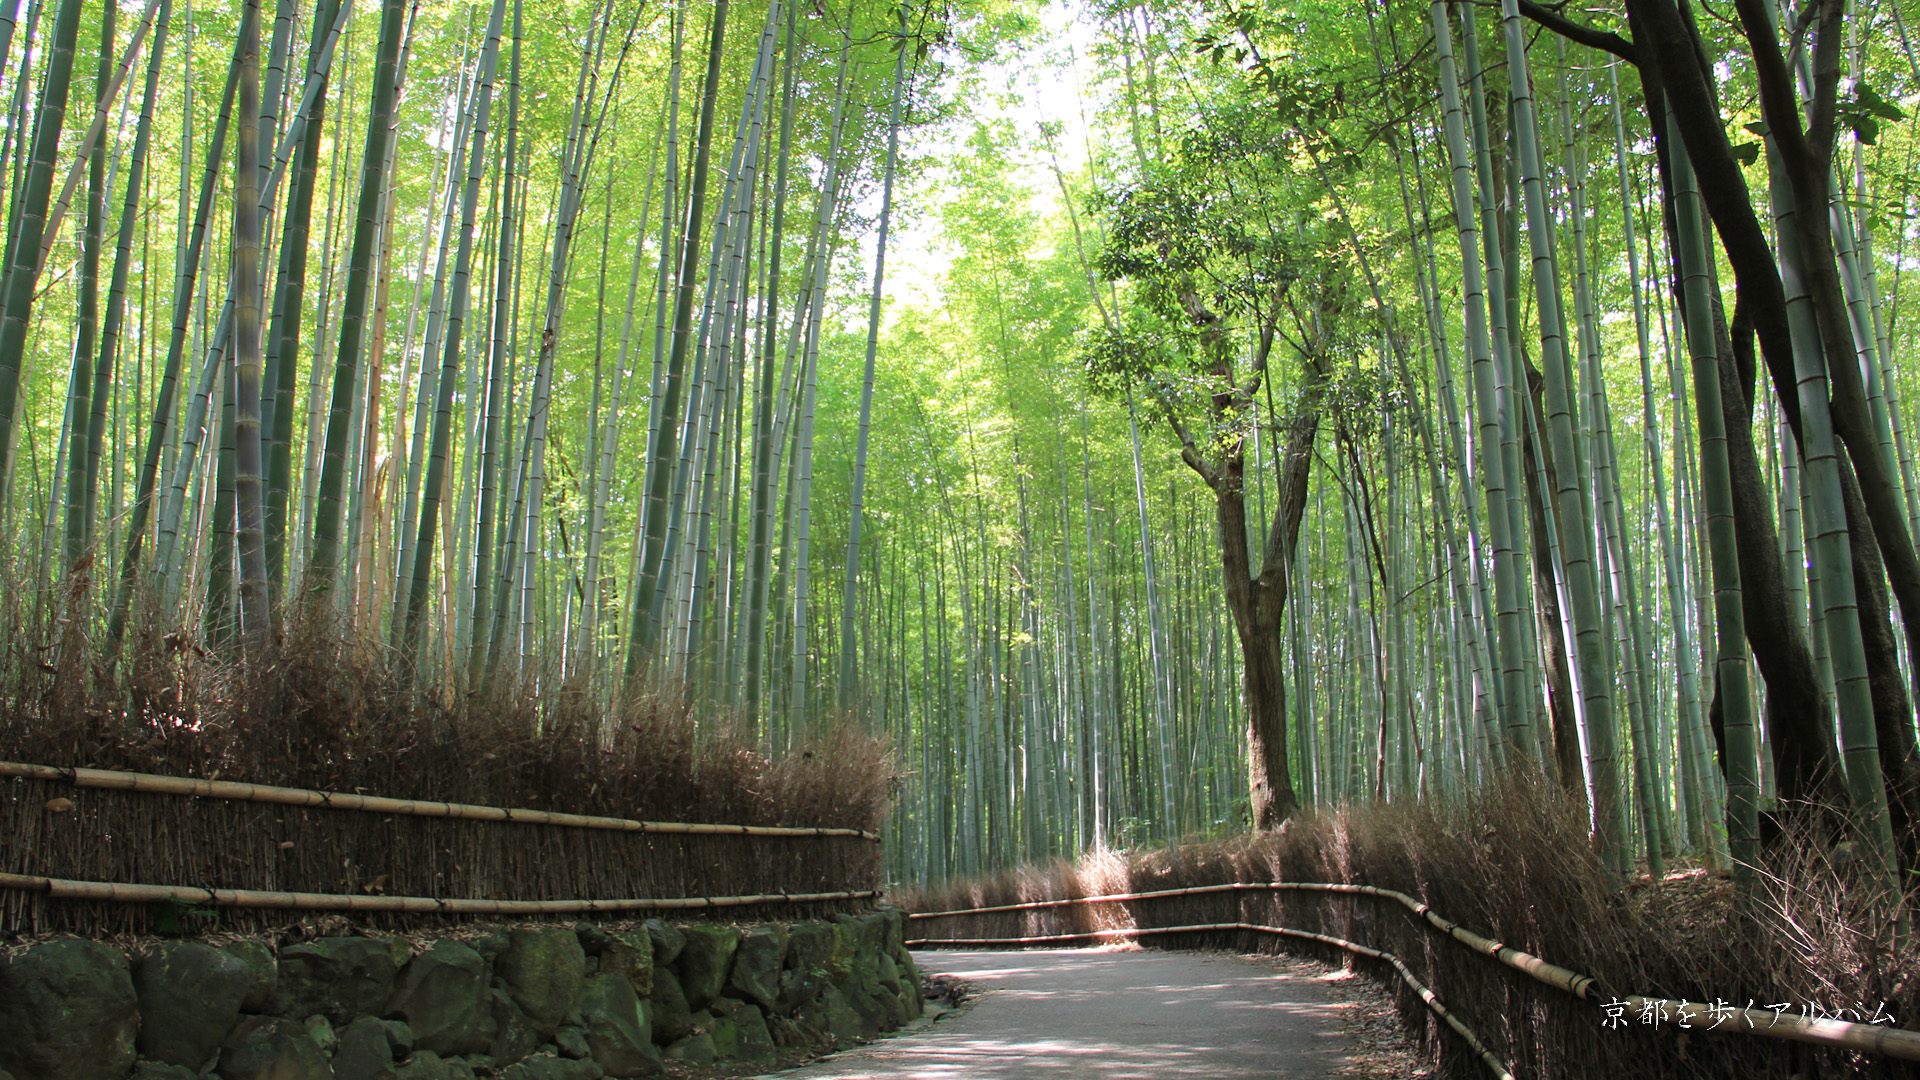 竹林 壁紙 Kyoto Bamboo Forest 京都を歩くアルバム